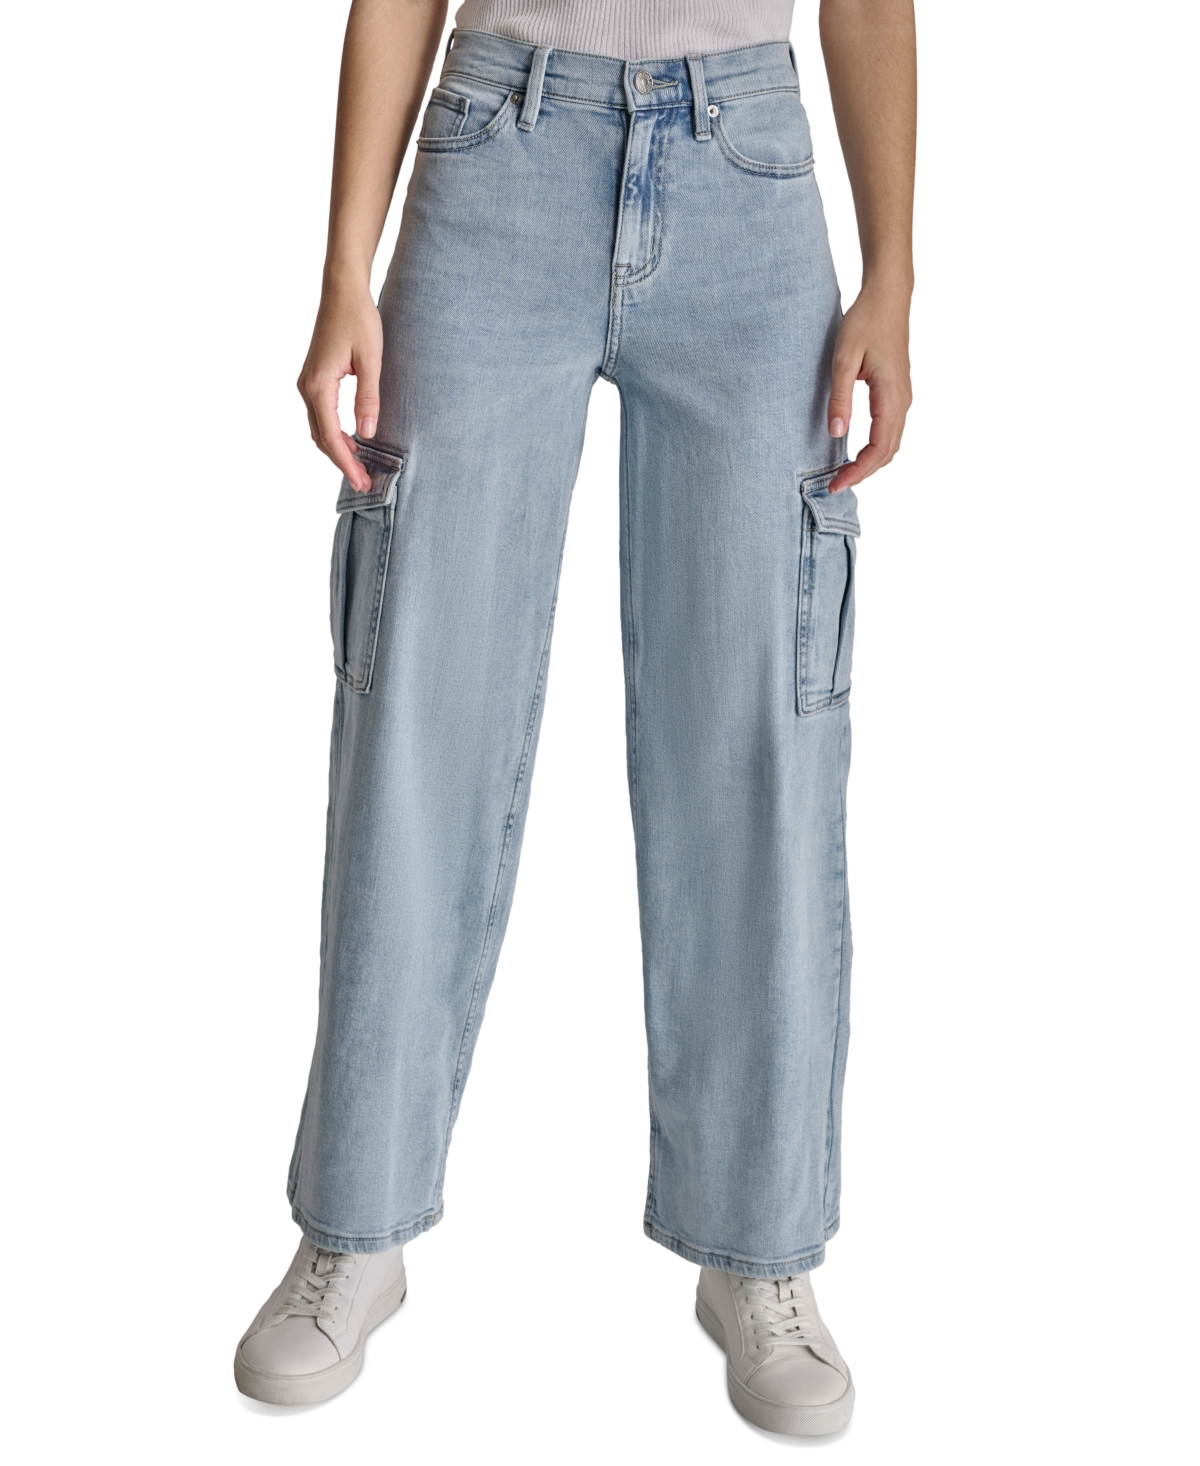 Women's High-Rise Wide-Leg Cargo Jeans - Lxt - Lexington